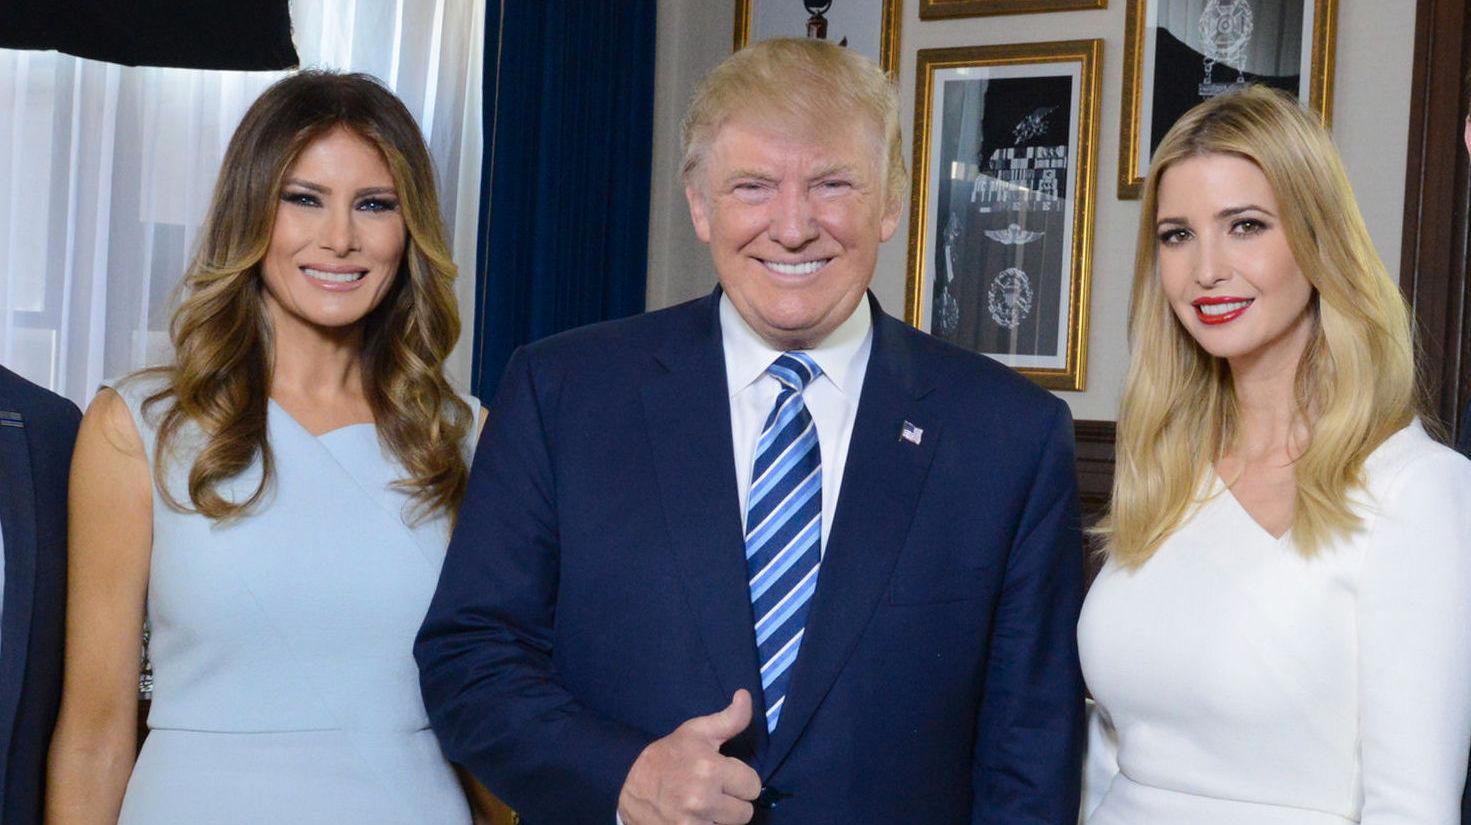 BUSINESSPARTNERE: Ivanka Trump (t.v) har stått ved faren Donald Trumps side gjennom valgkampen. Her med stemor og kommende førstedame Melania Trump. Foto: NTB scanpix